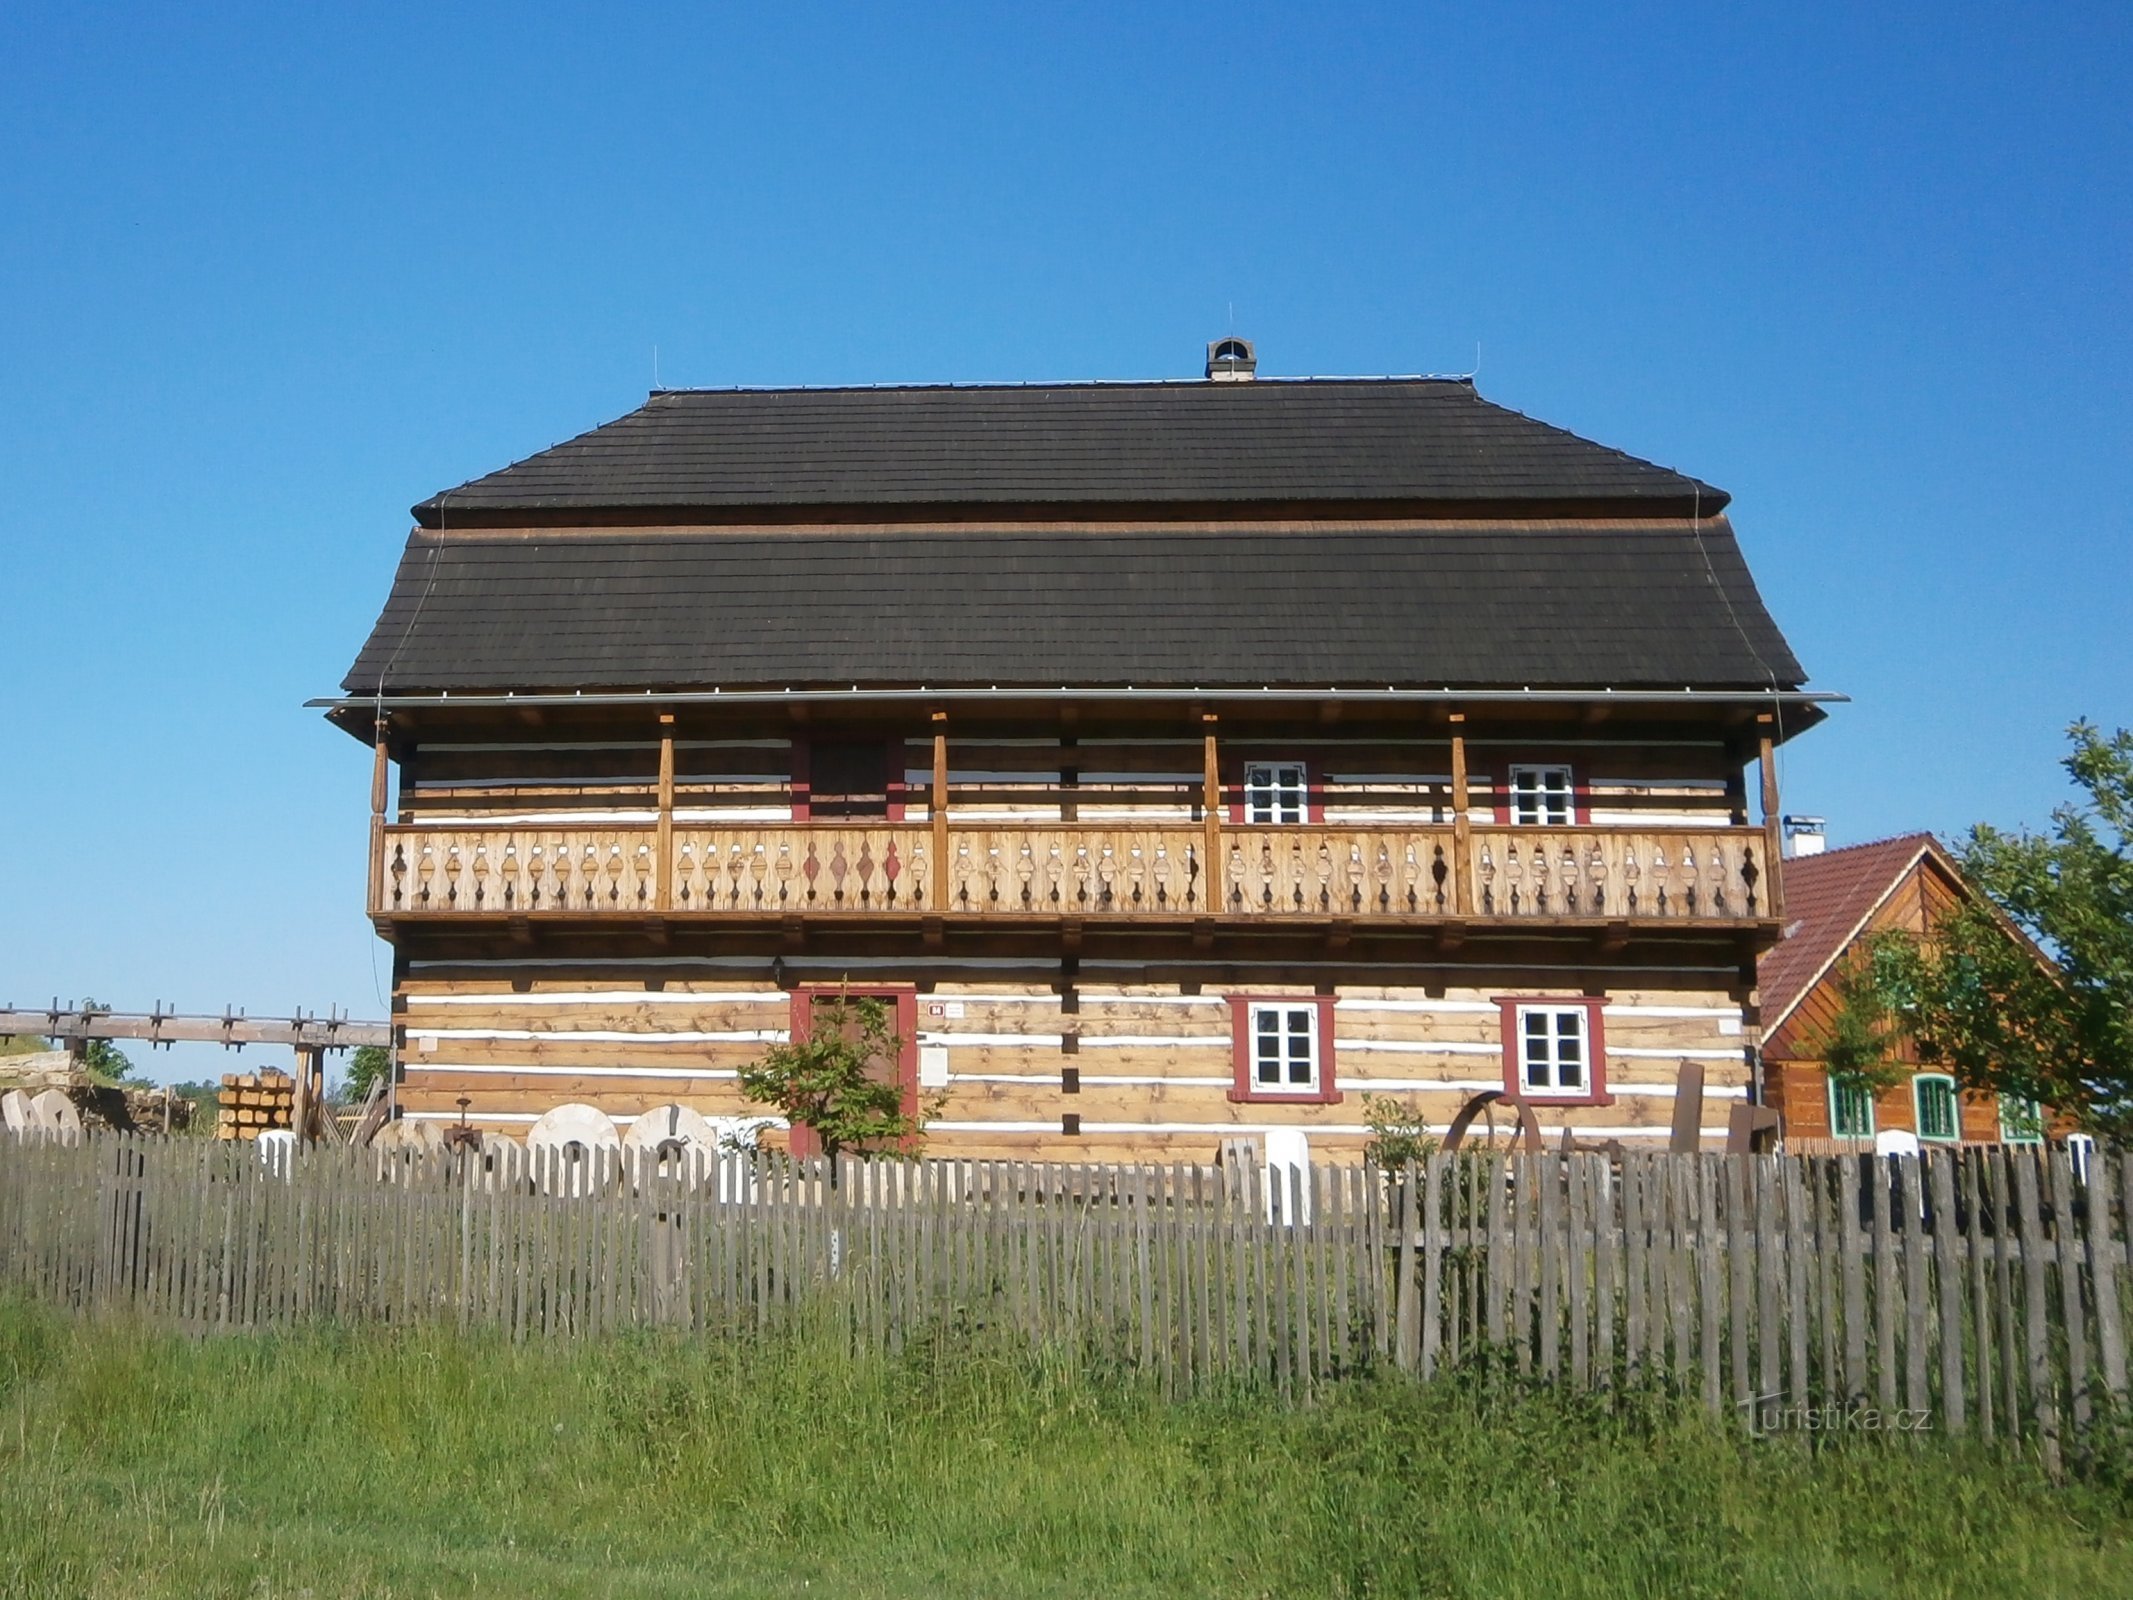 Réplique du moulin de Béleč dans le musée en plein air de Krňovick (27.5.2017 mai XNUMX)